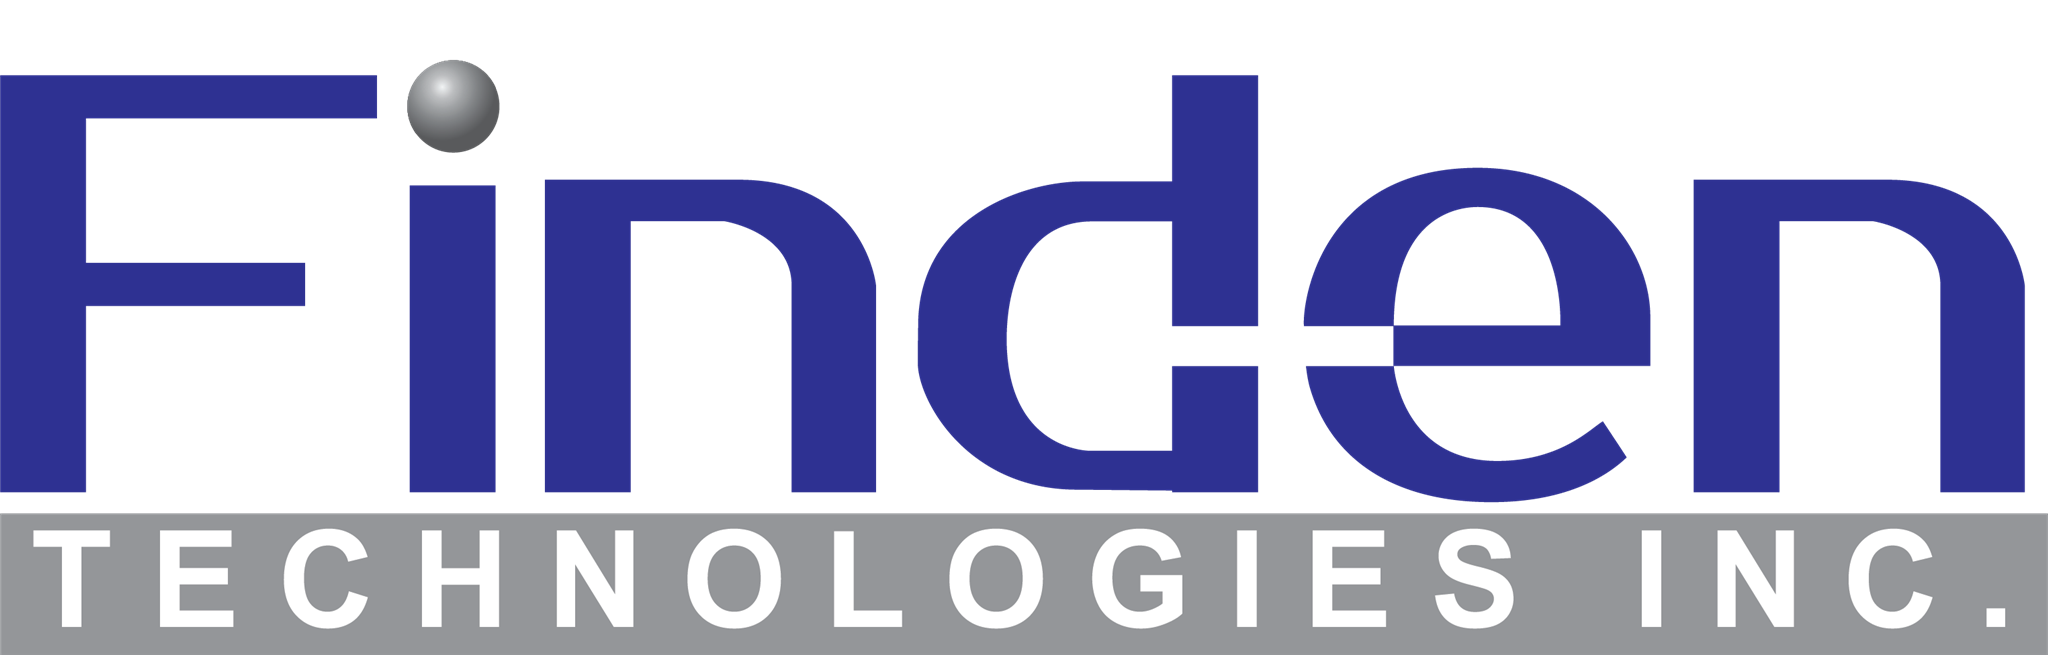 Finden Technologies Inc.